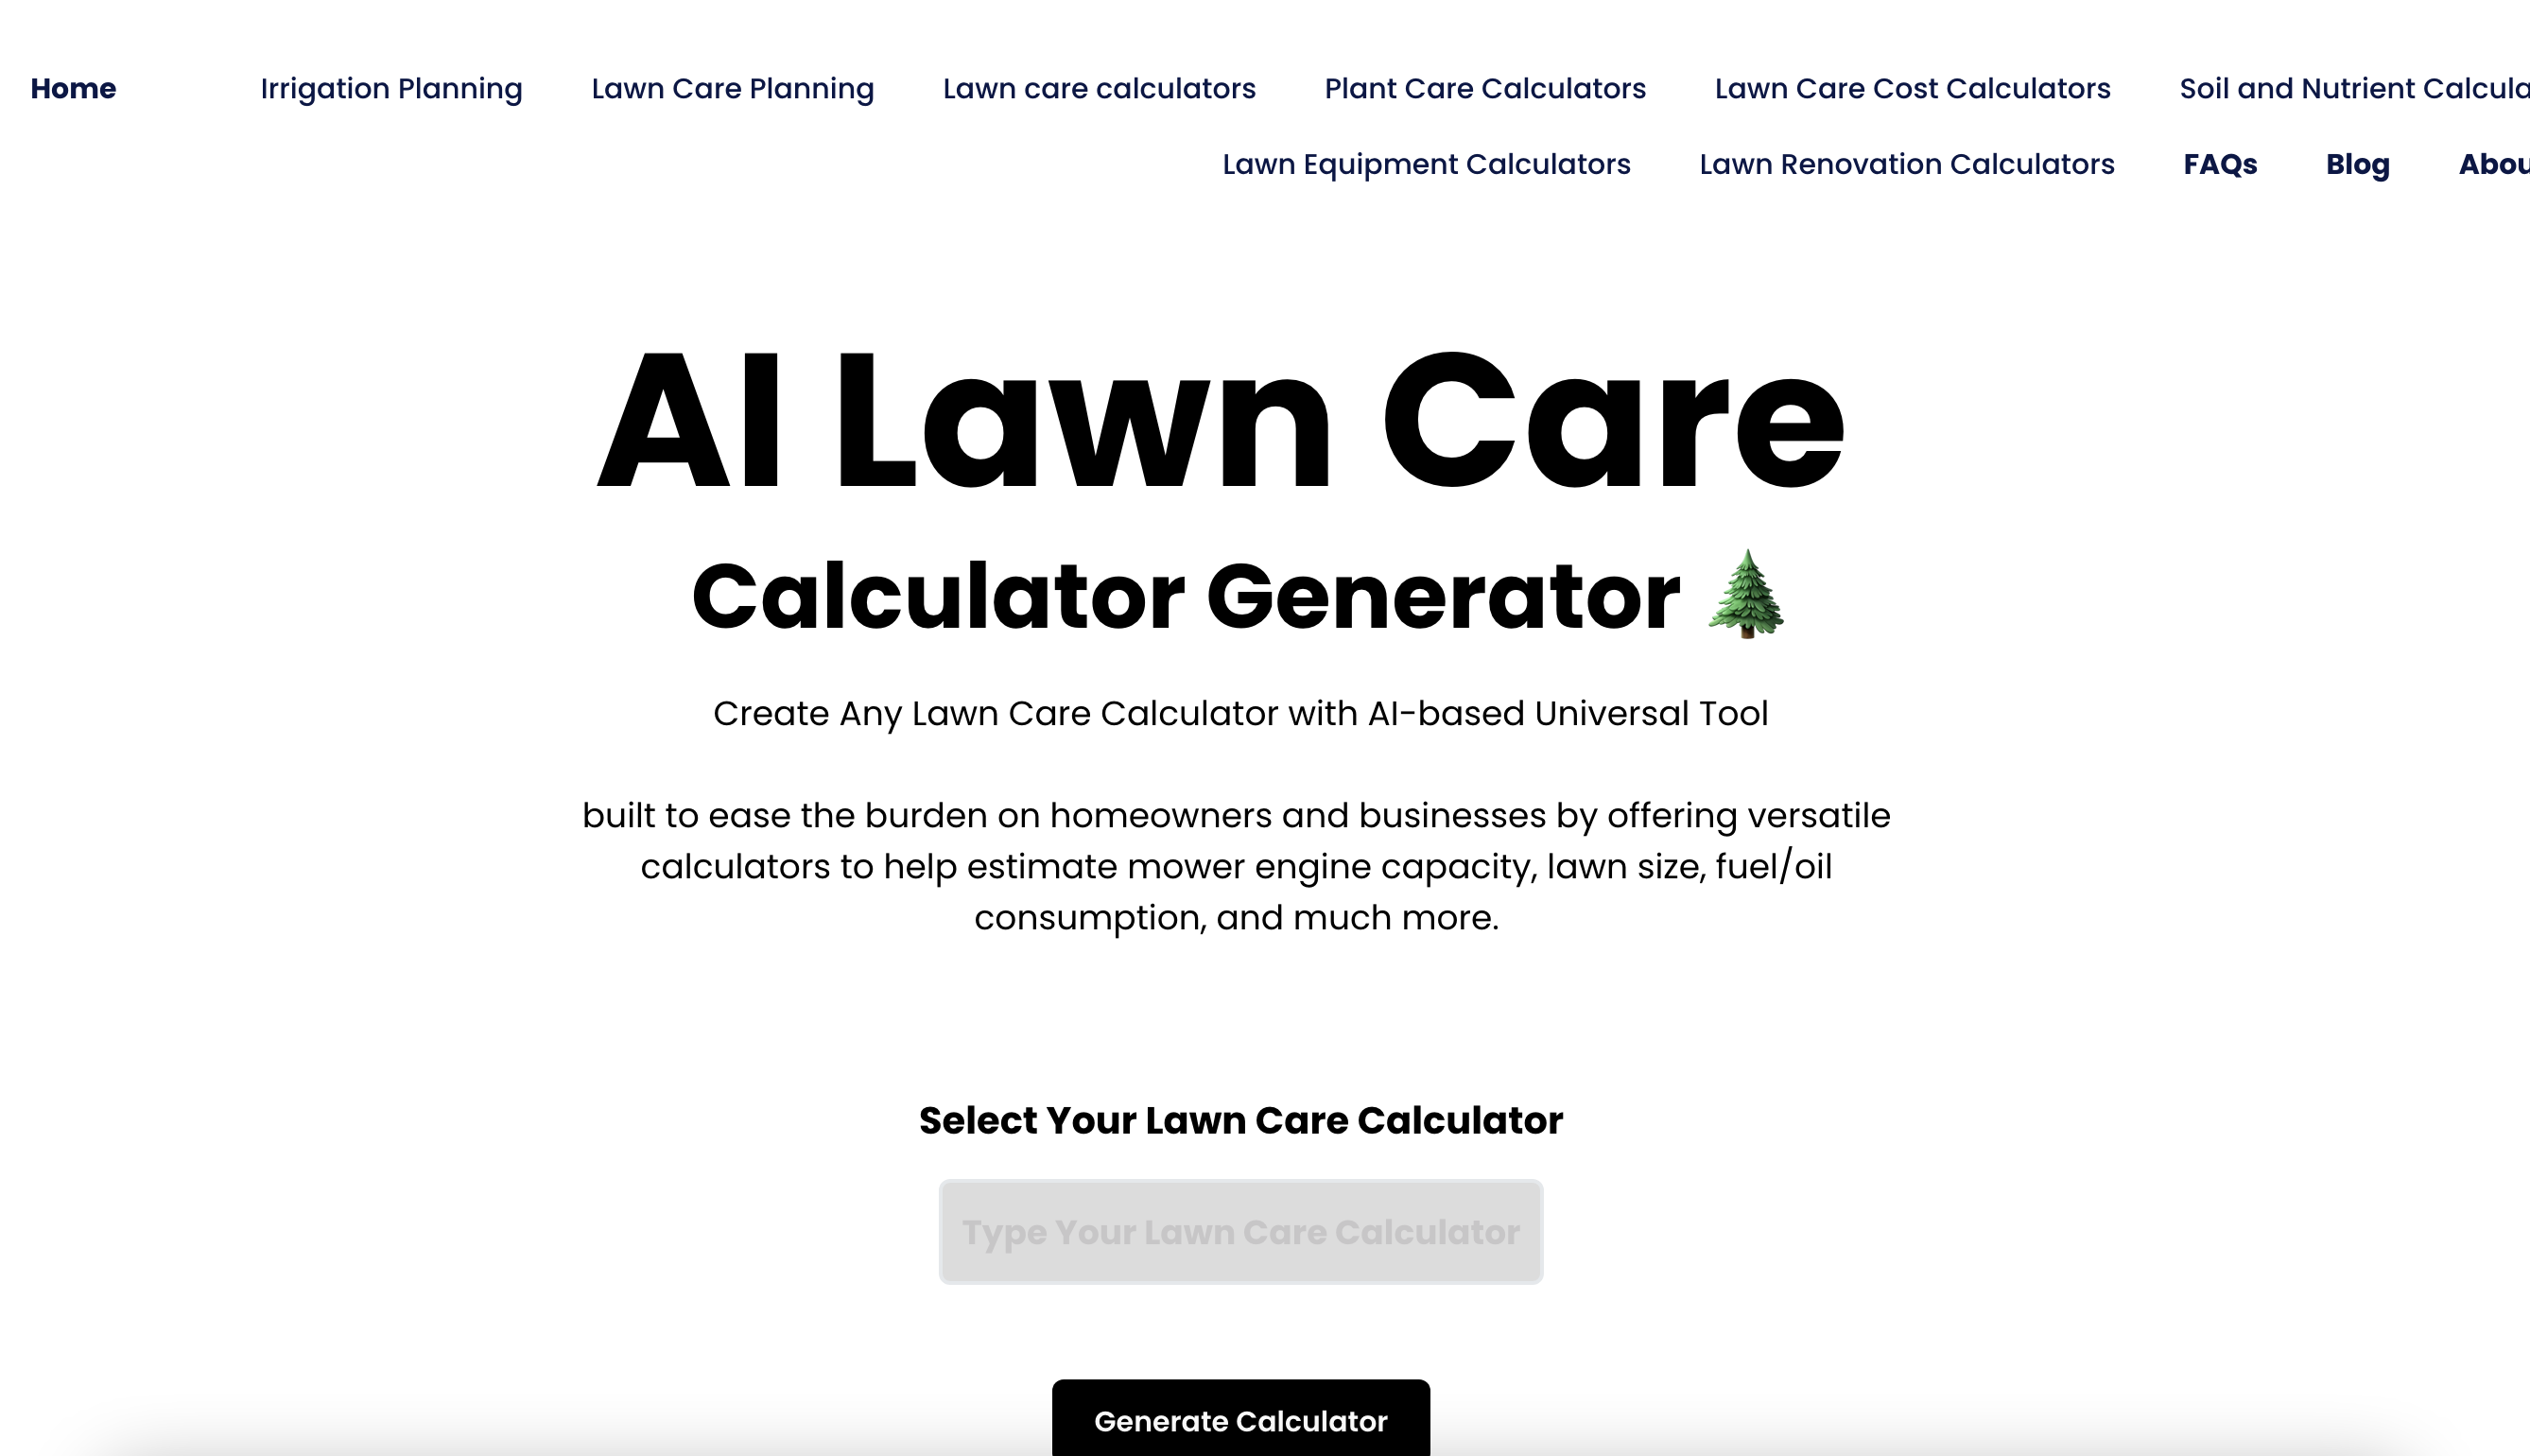 AI Lawn Care Calculator Generator icon